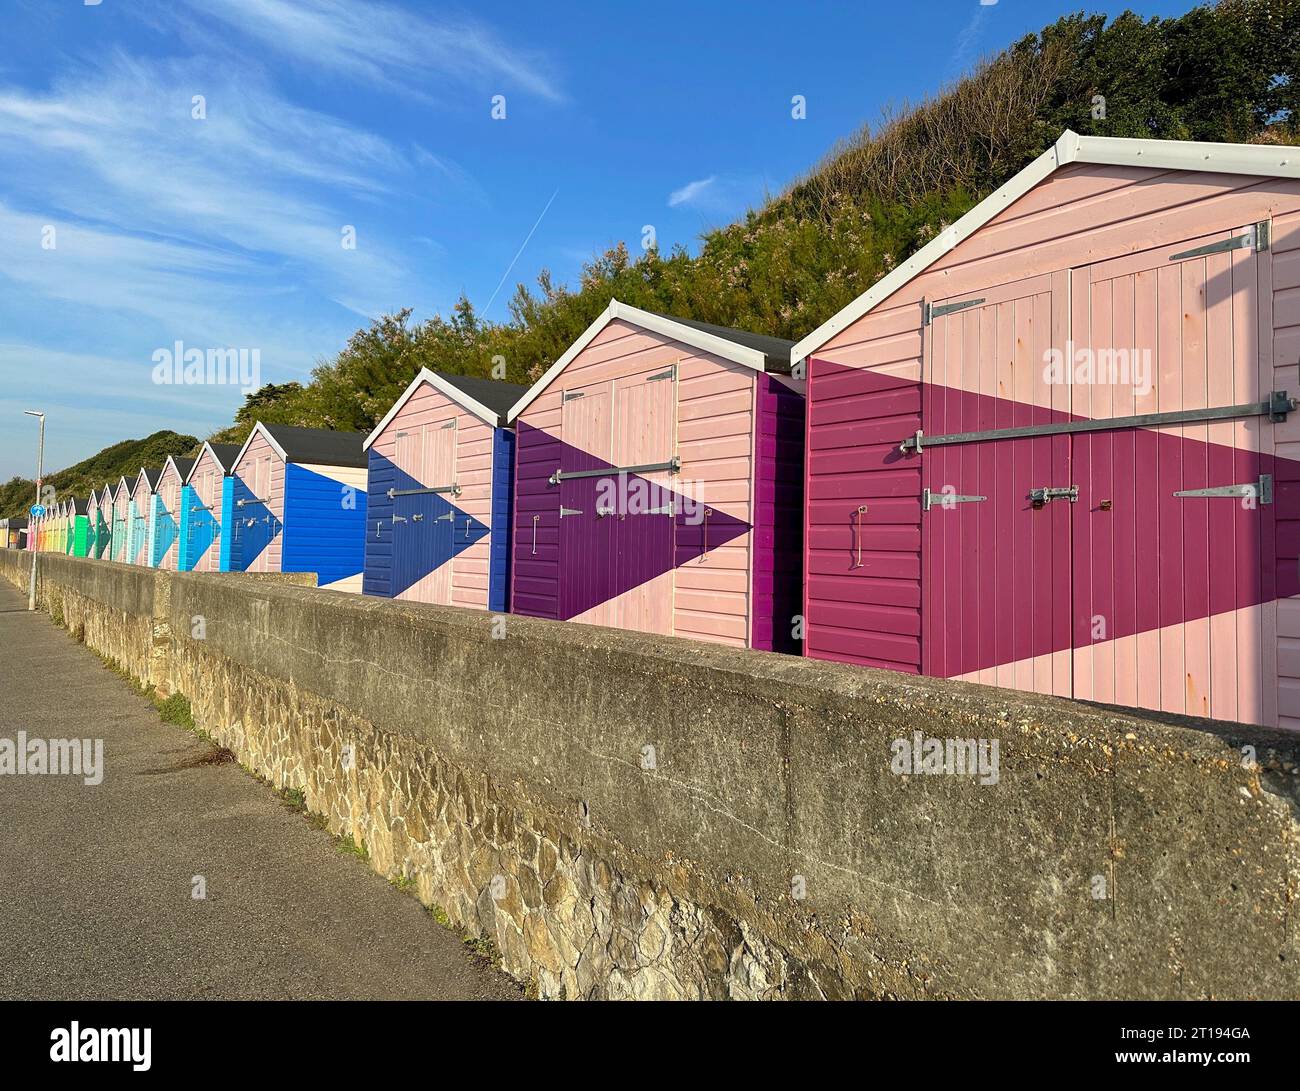 Rangée de cabanes de plage en bois multicolores sur la plage, Folkestone, Kent, Angleterre, Royaume-Uni Banque D'Images